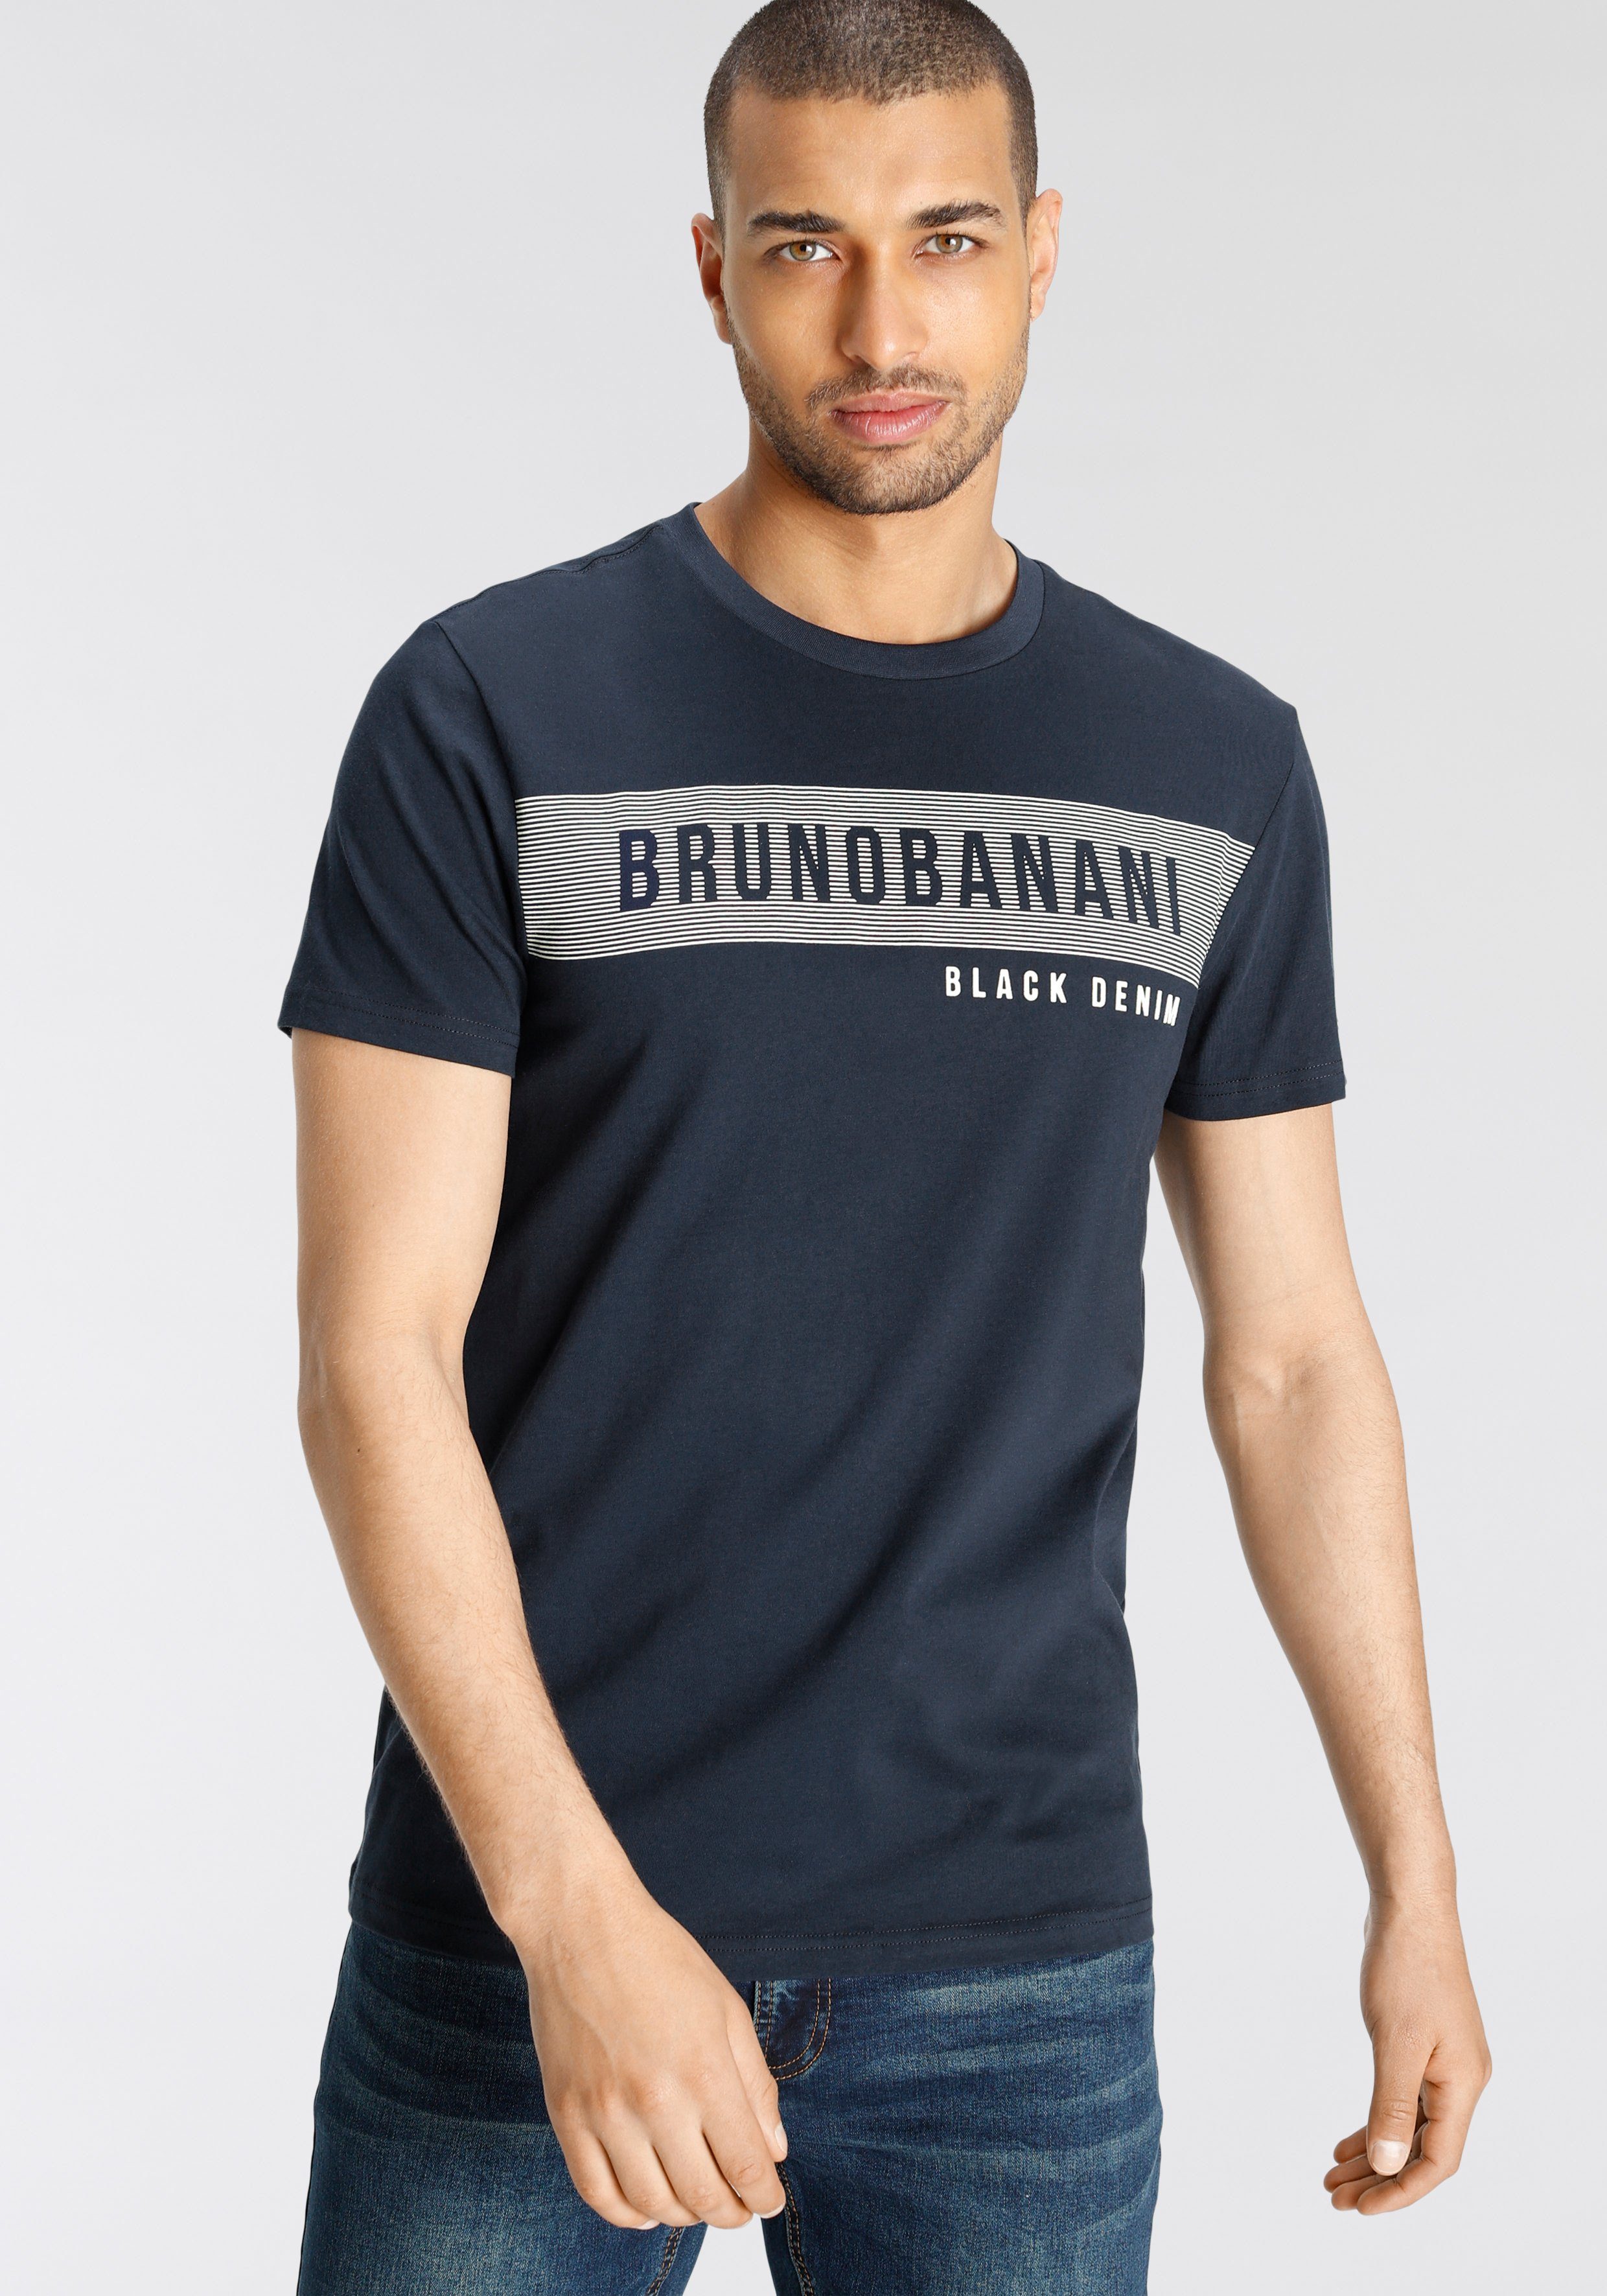 Markenprint, Modisch Bruno T-Shirt Shirt mit Banani bedrucktes